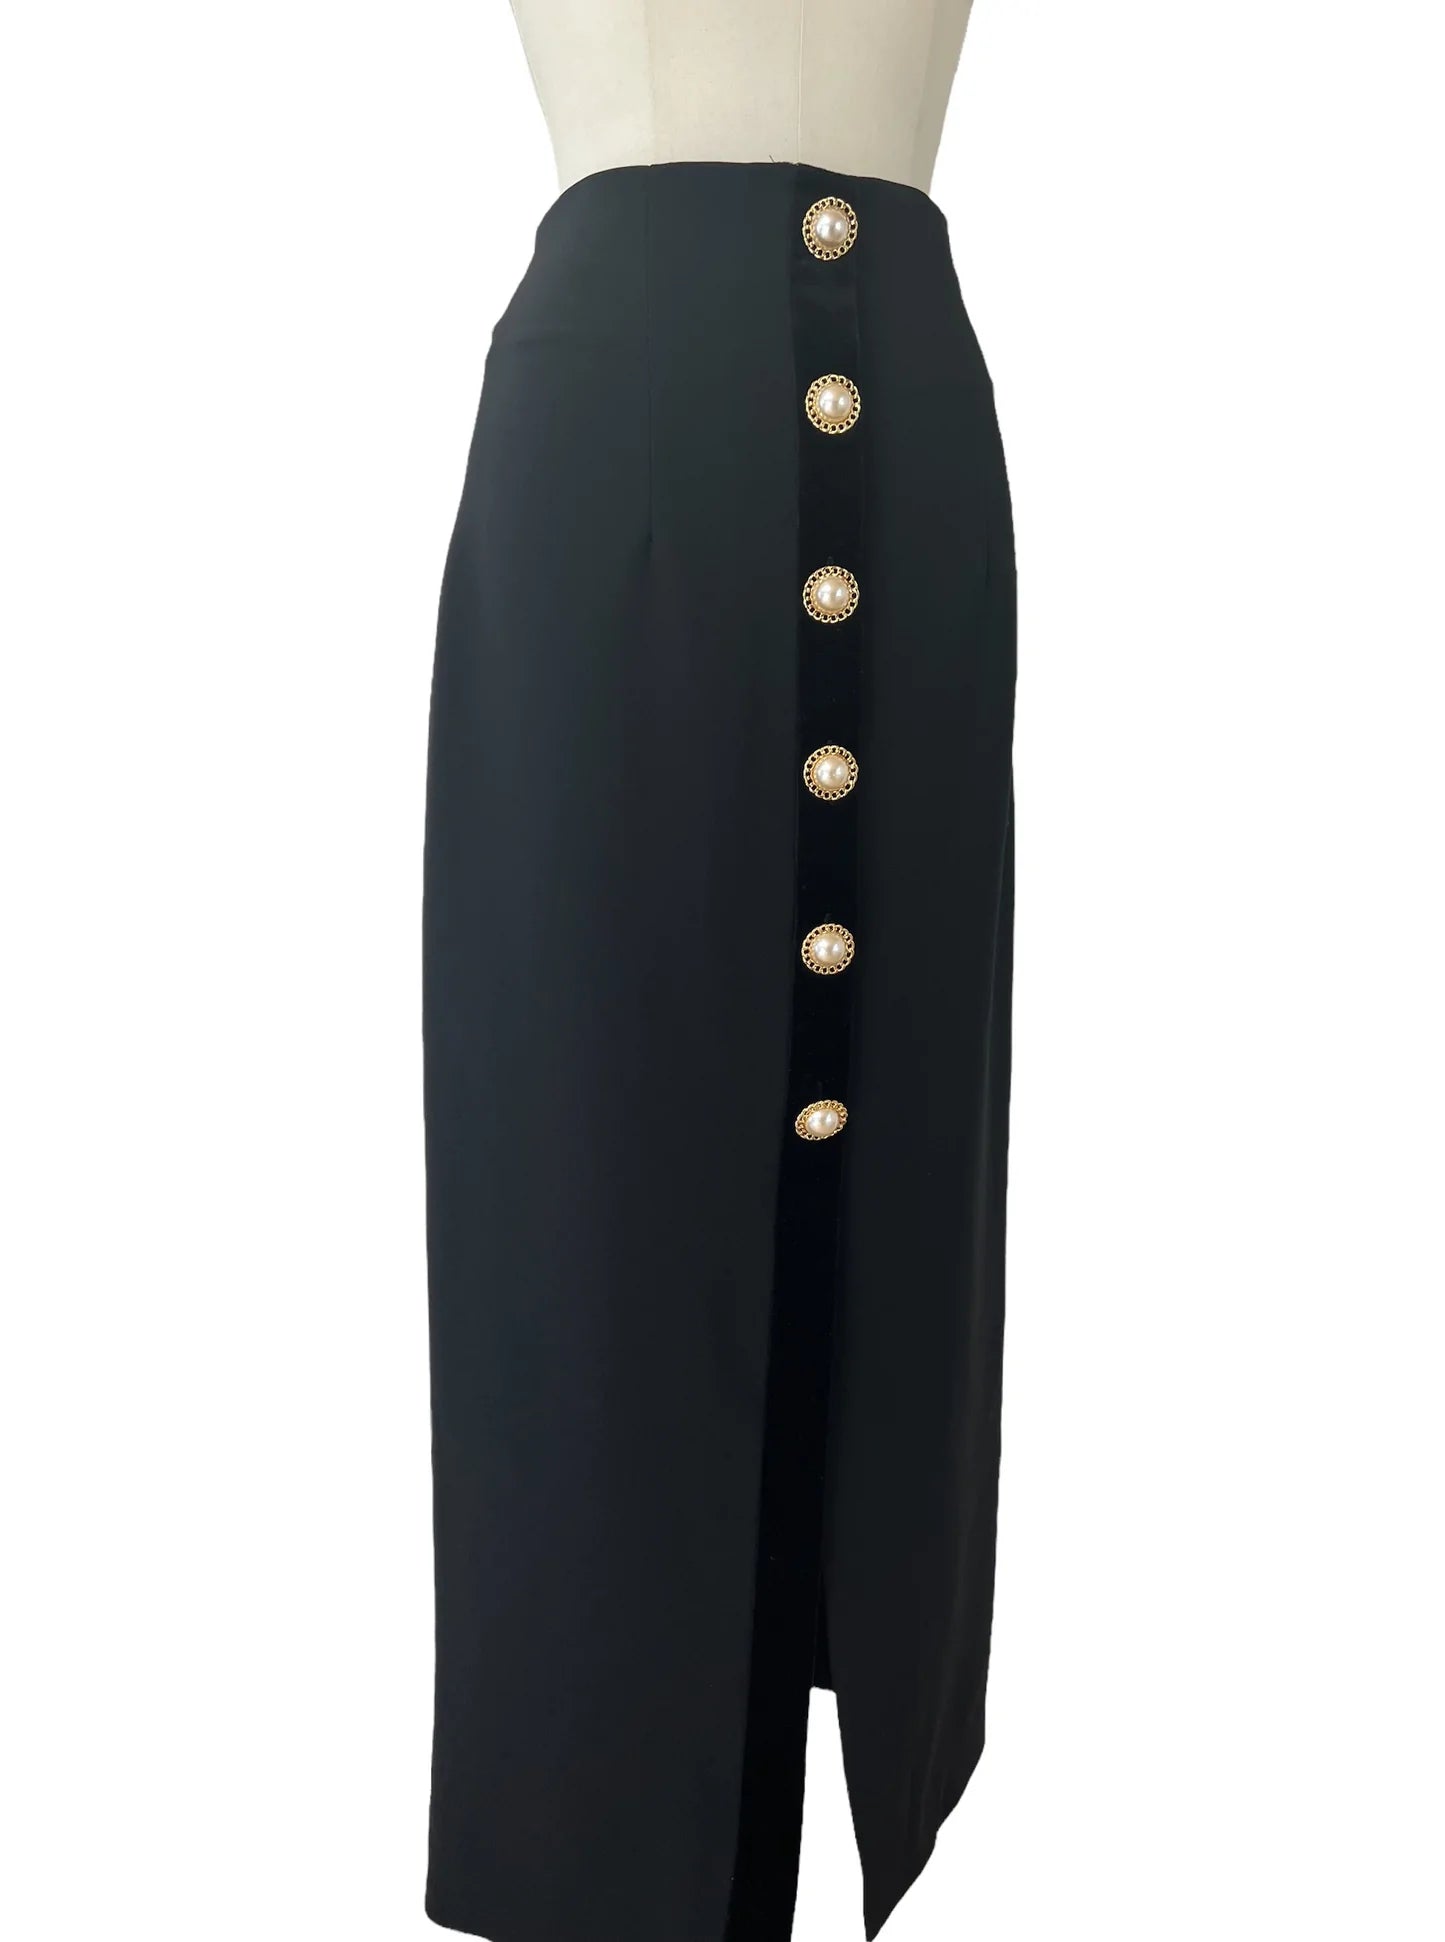 Black Long Skirt - XS